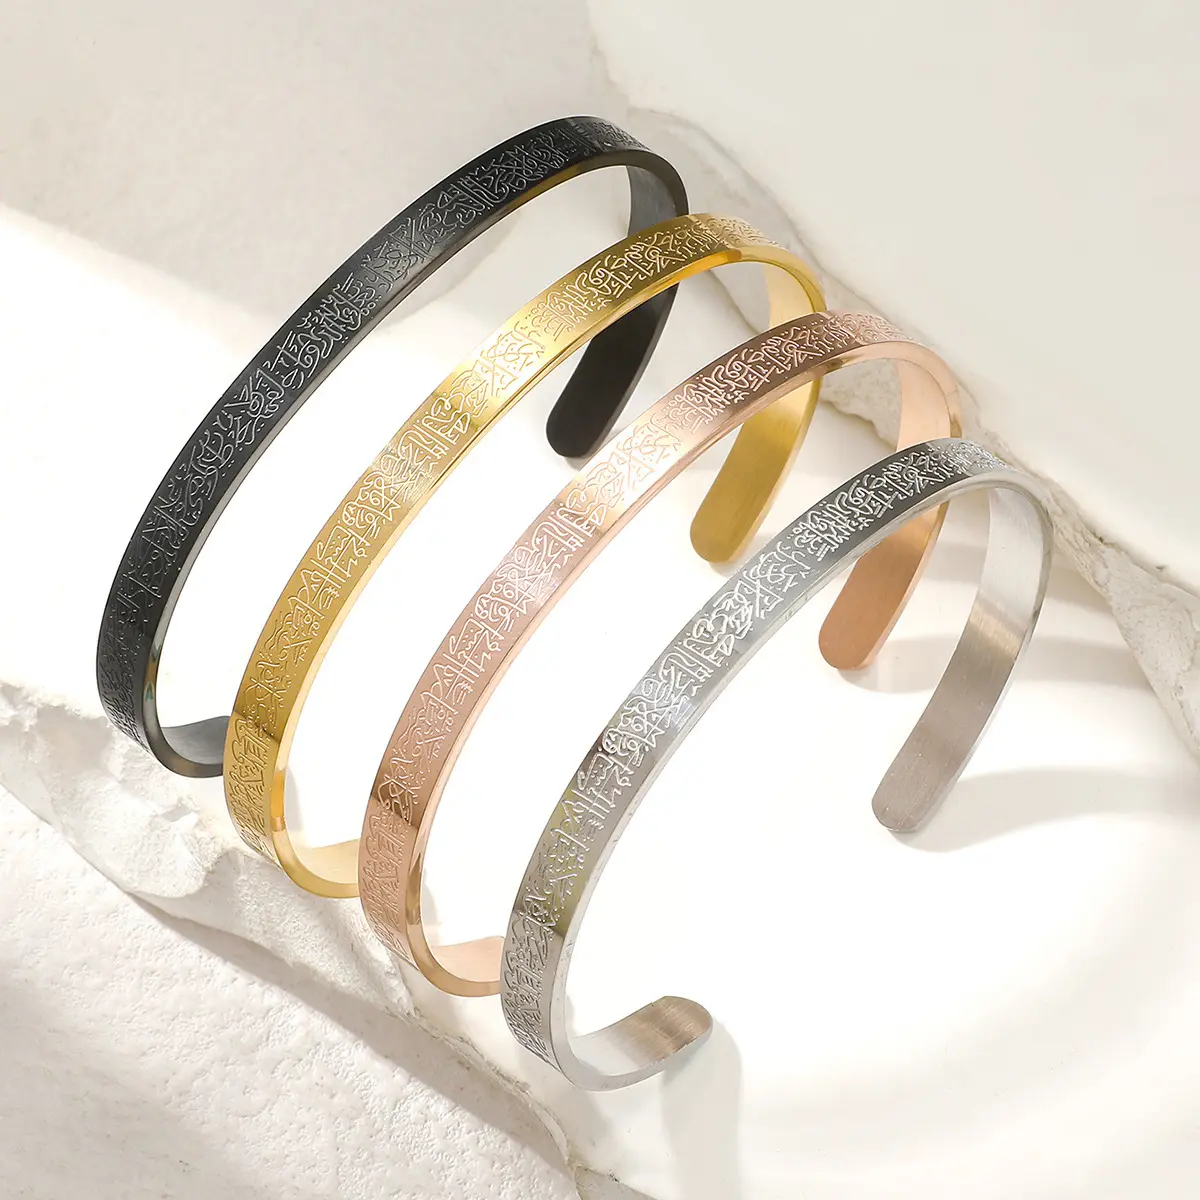 Moda oro placcato 18K in acciaio inox classico braccialetto braccialetto inciso bracciale personalizzato per donna uomo